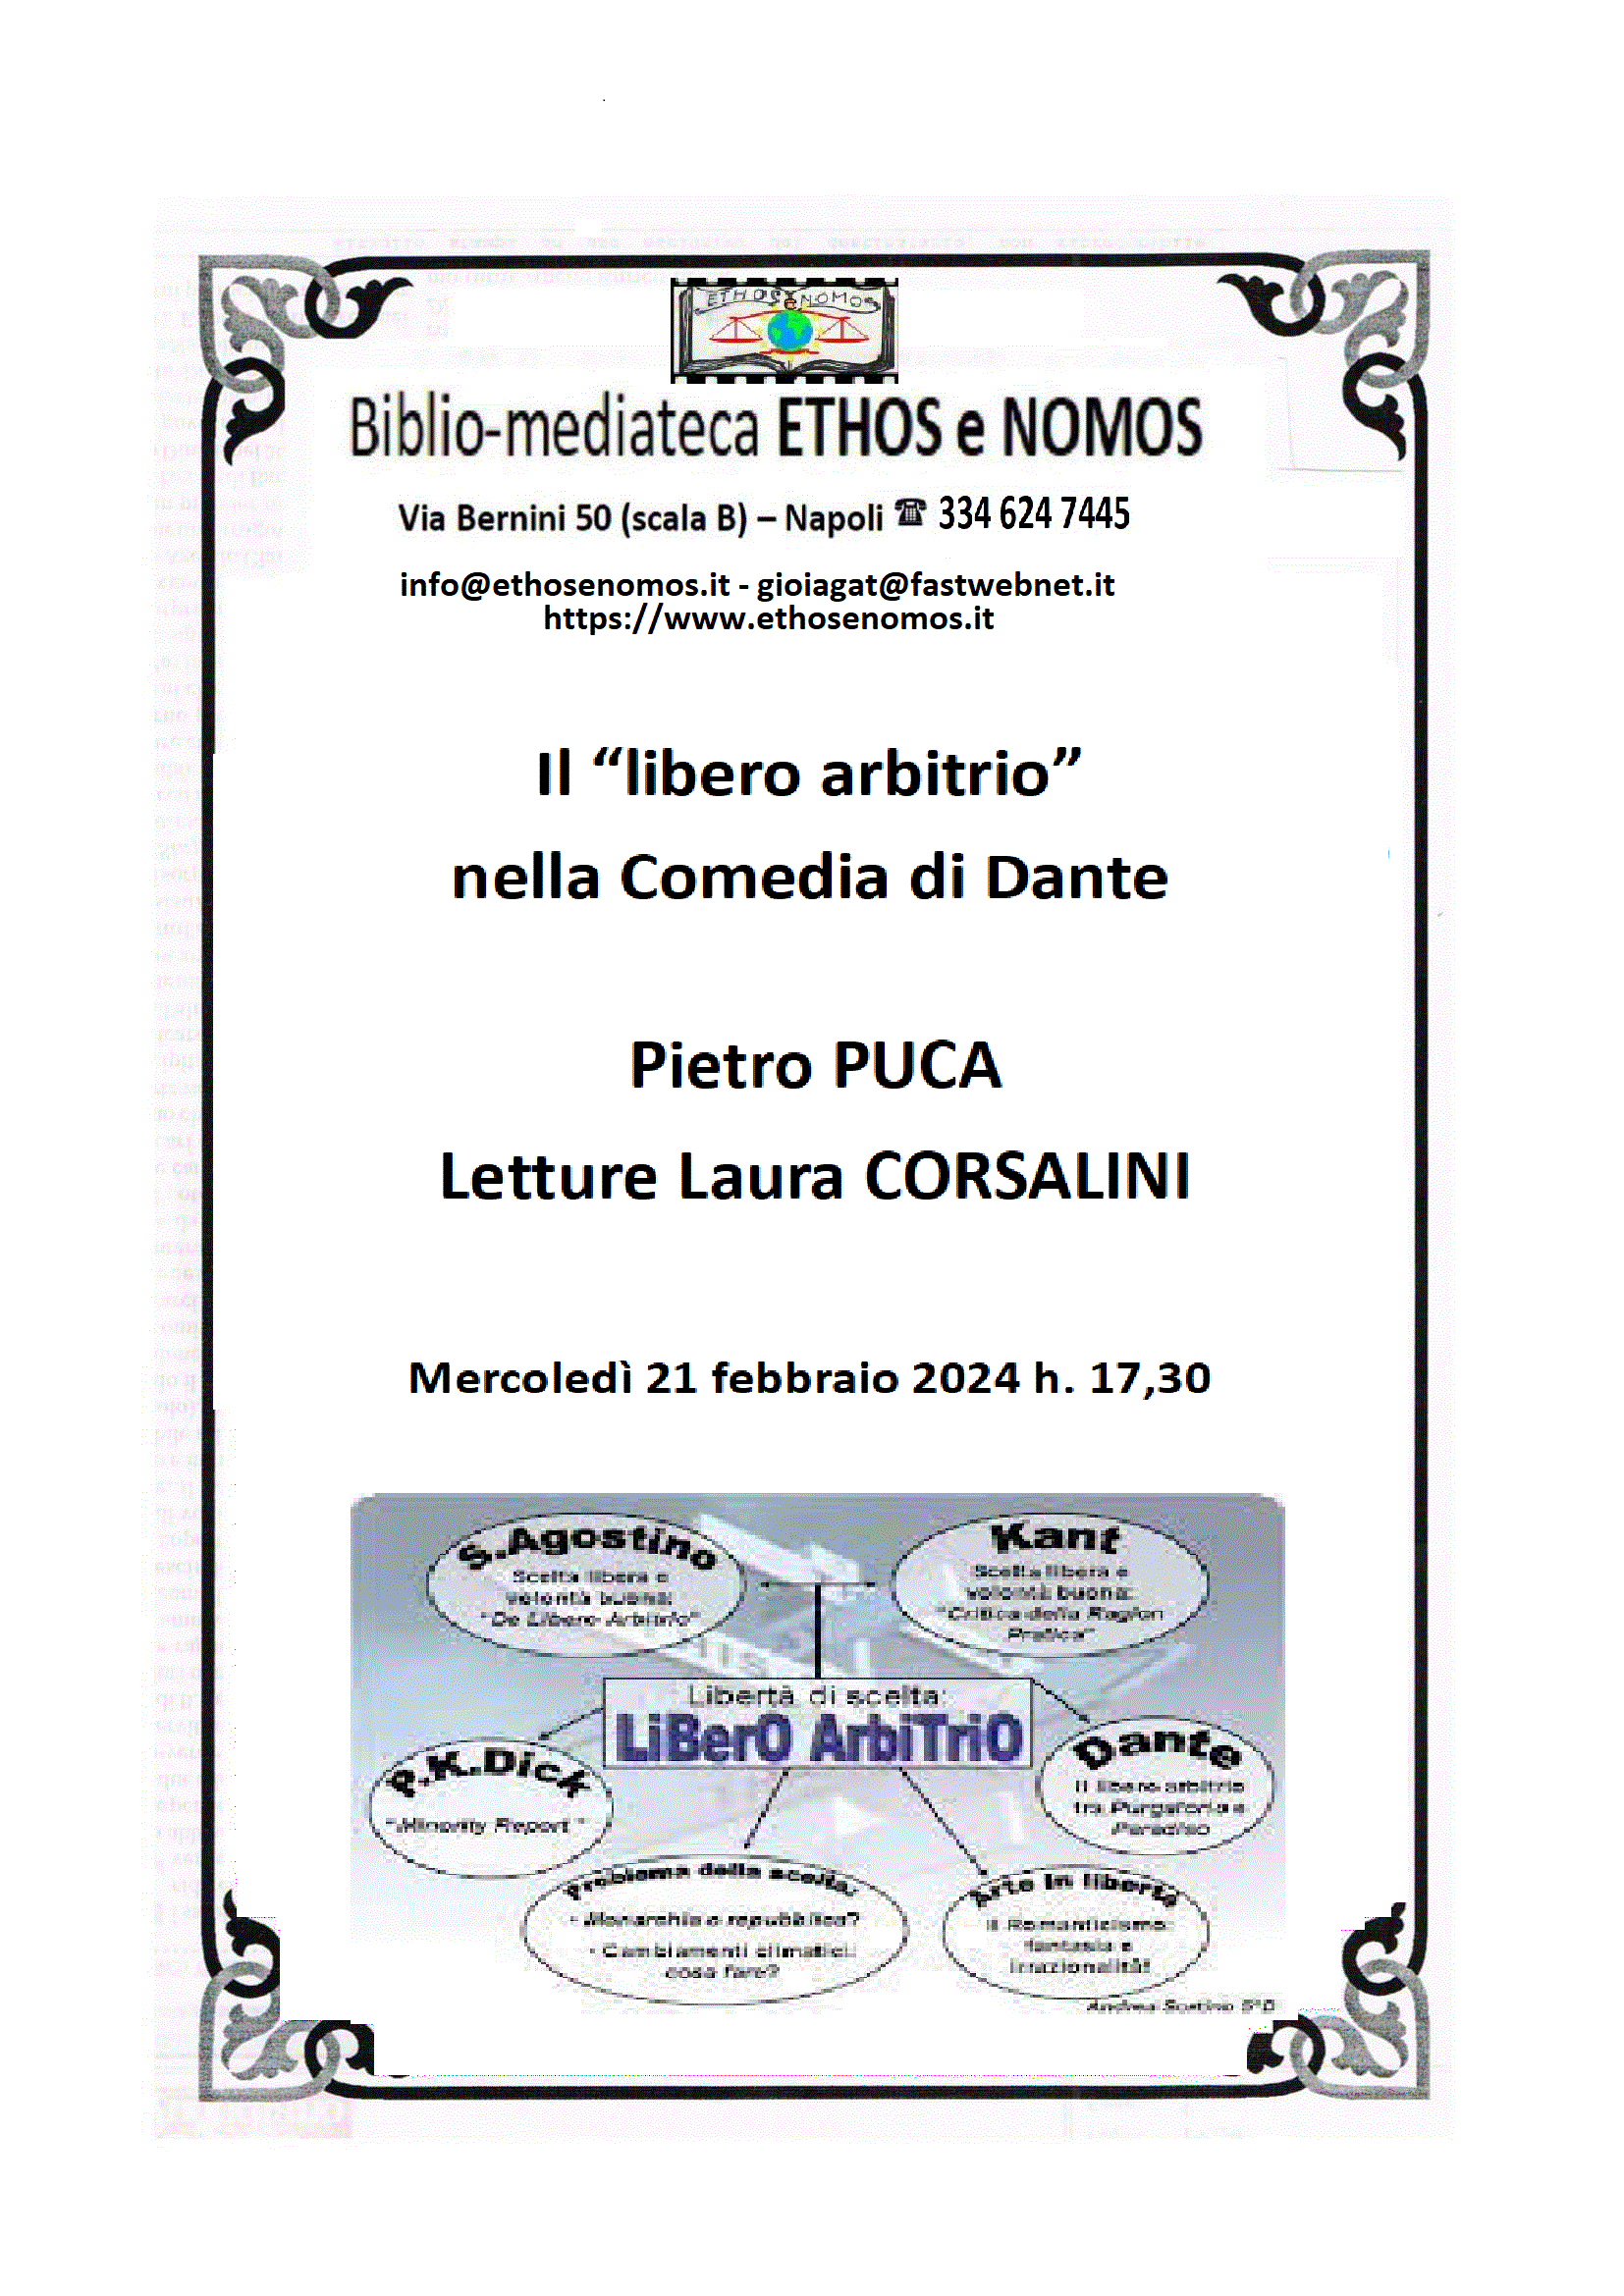 Pietro Puca - Il libero arbitrio nella Comedia di Dante